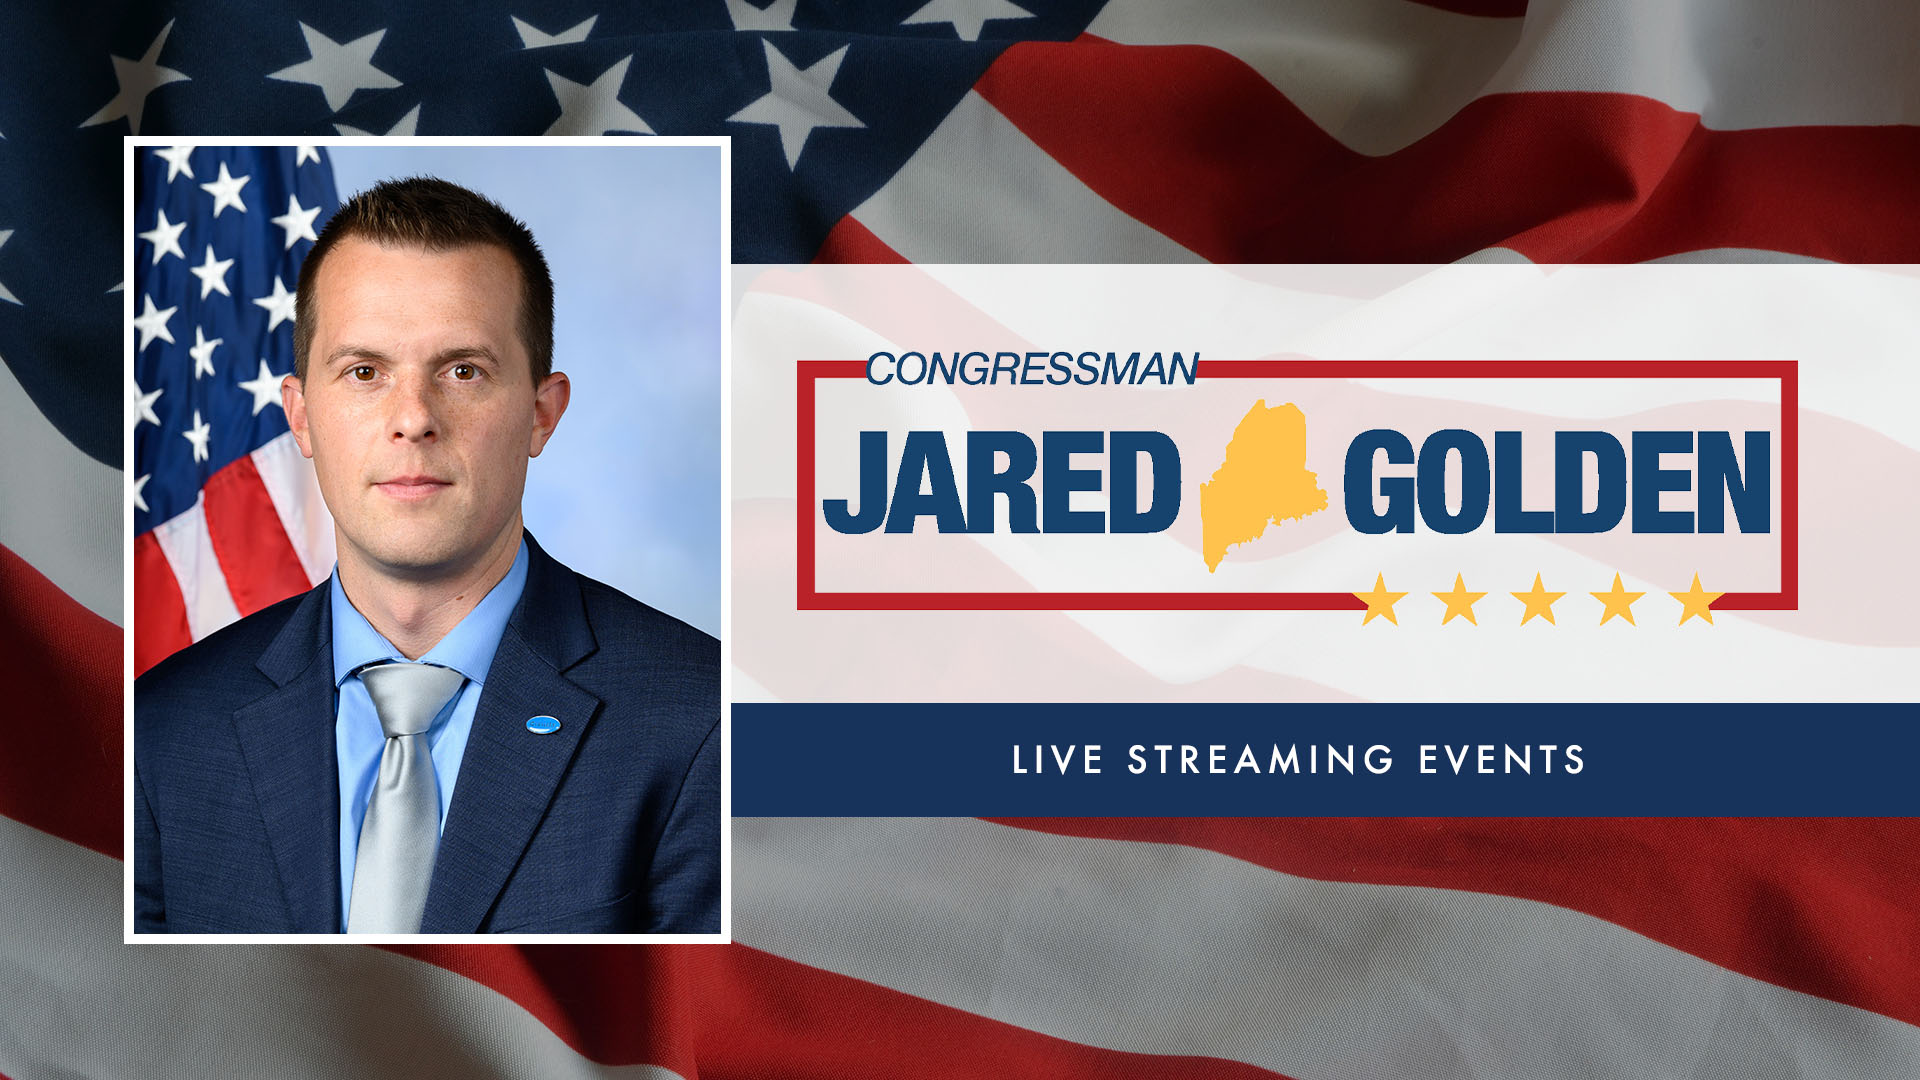 Congressman Jared Golden